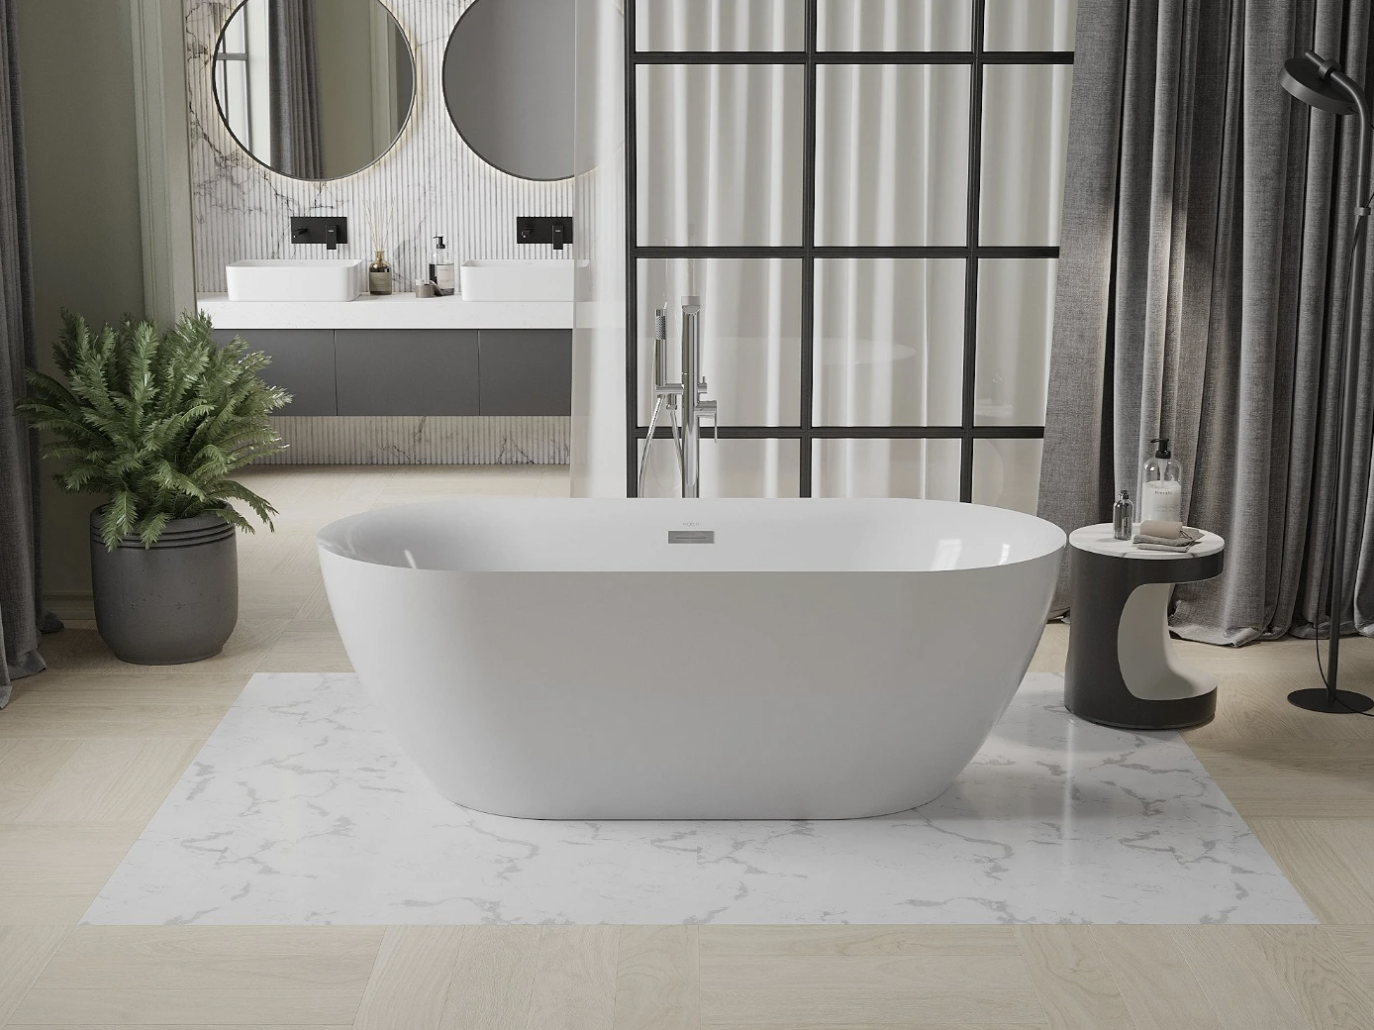 5 pomysłów na relaksującą kąpiel w wannie